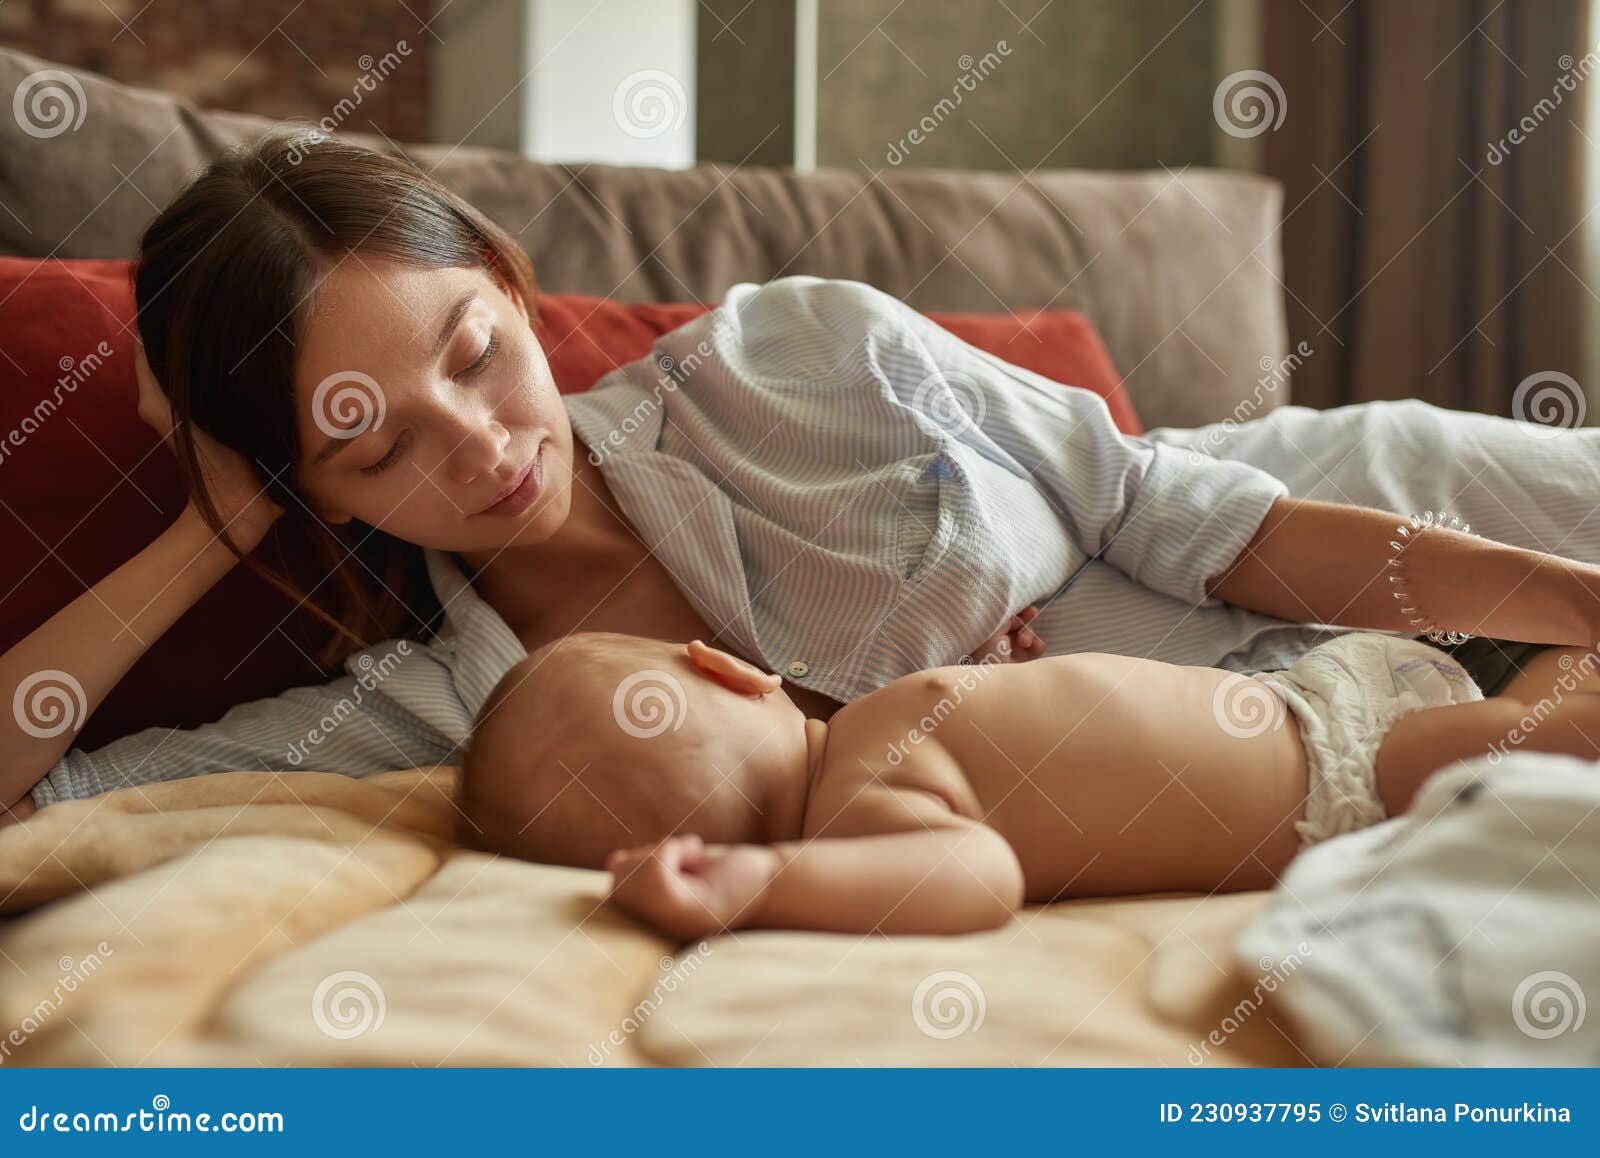 сын смотрит как спит голая мама фото 46